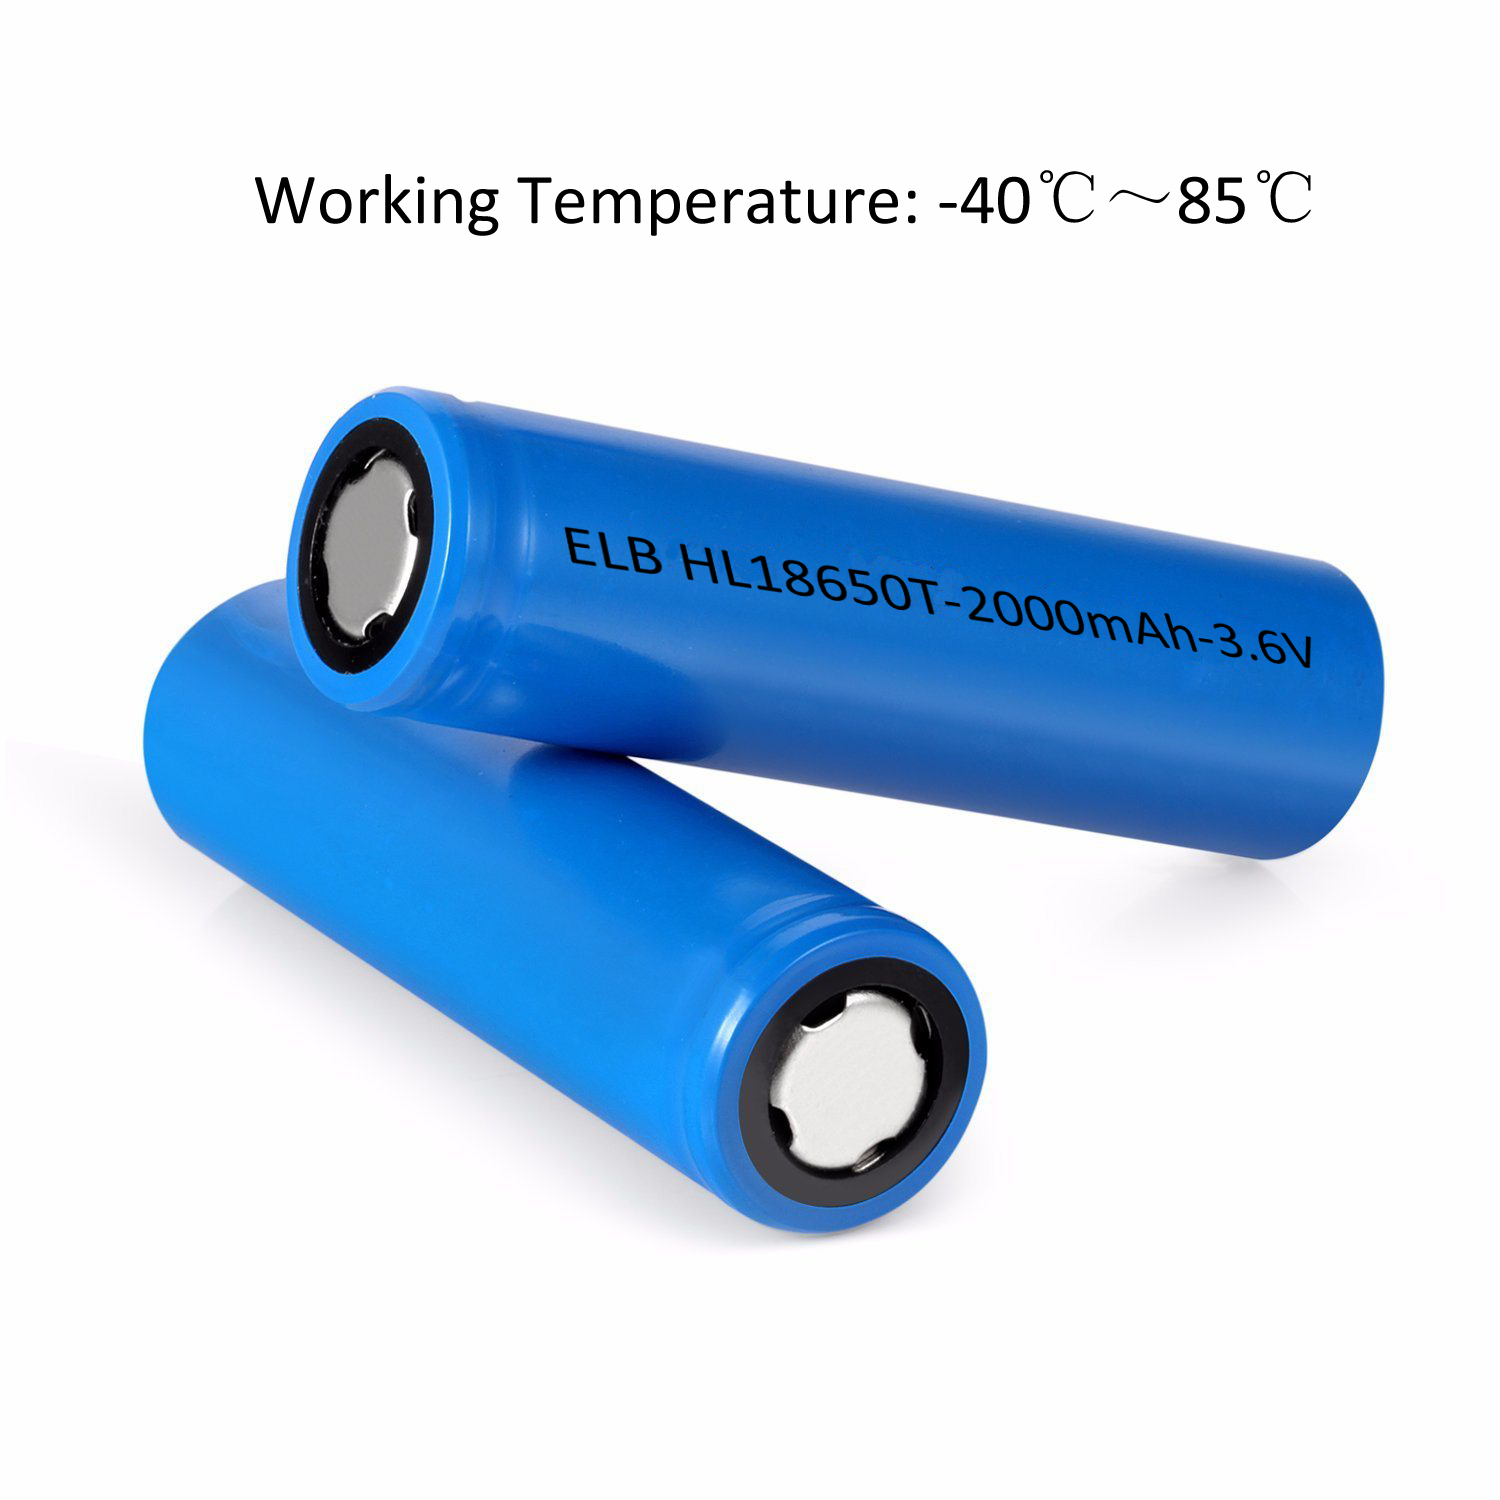 Alleviate badminton shovel 18650 2000mAh Low Temperature Lithium Batteries | ELB Energy Group